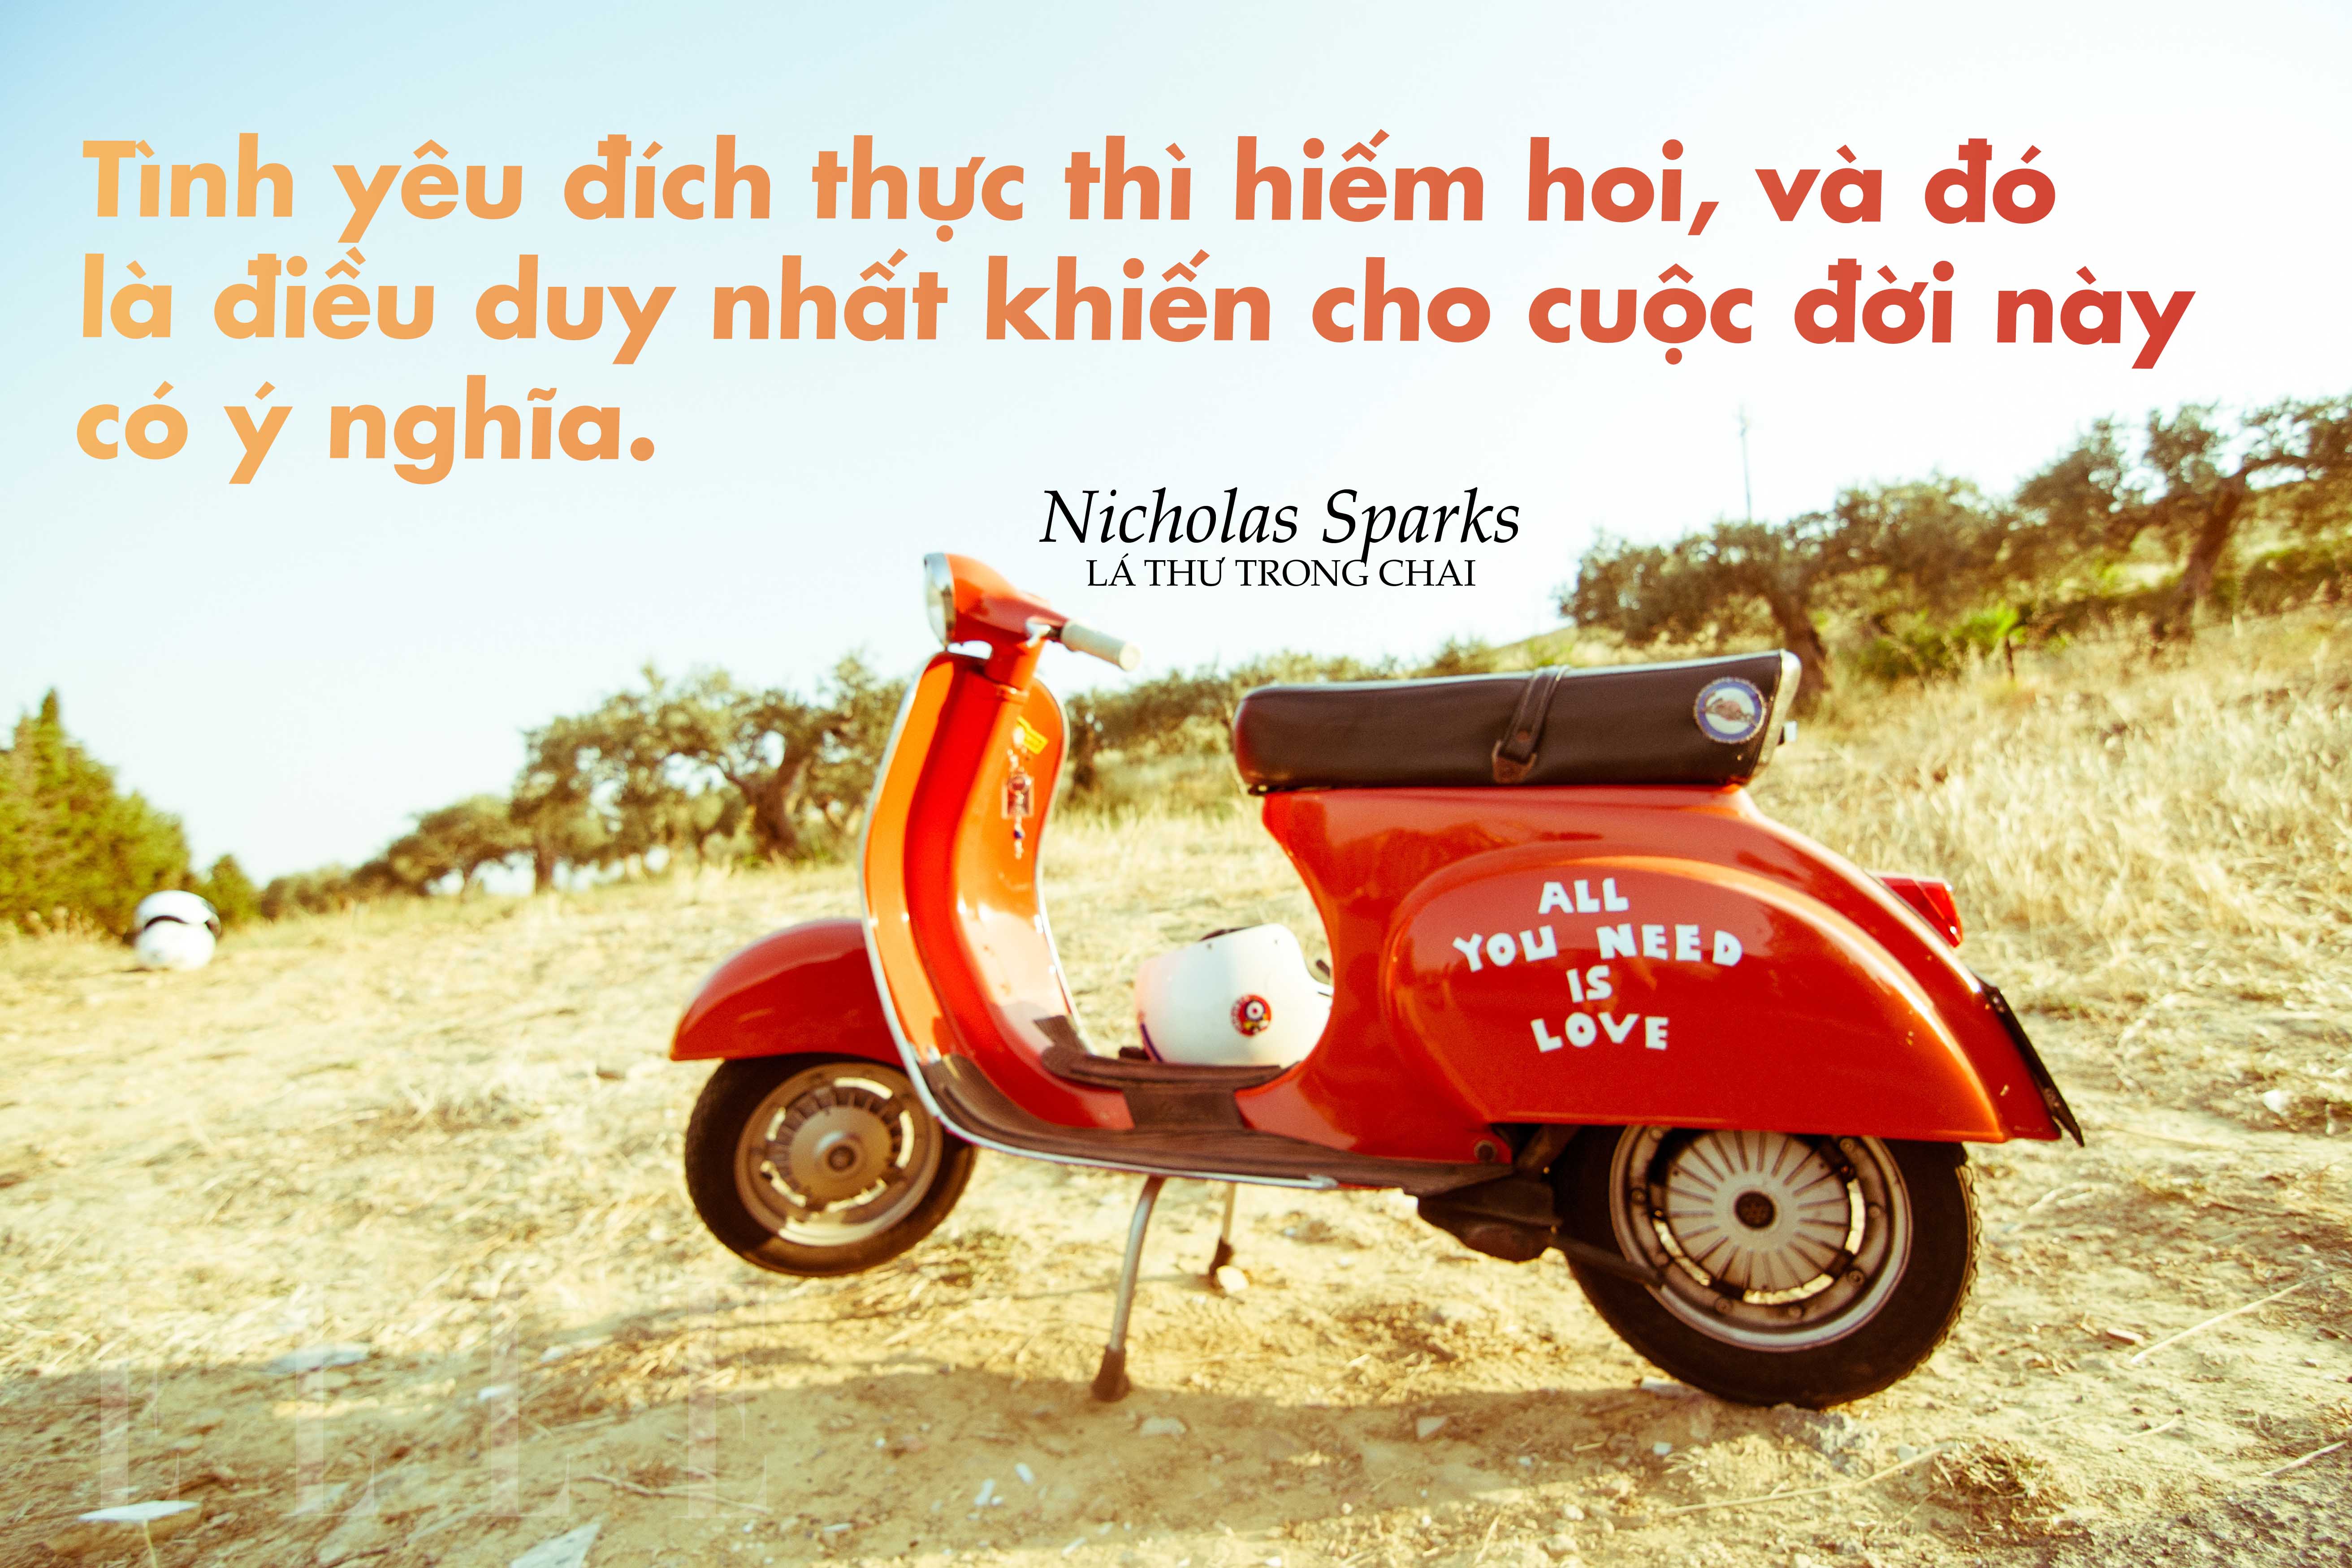 Nicholas Sparks 5